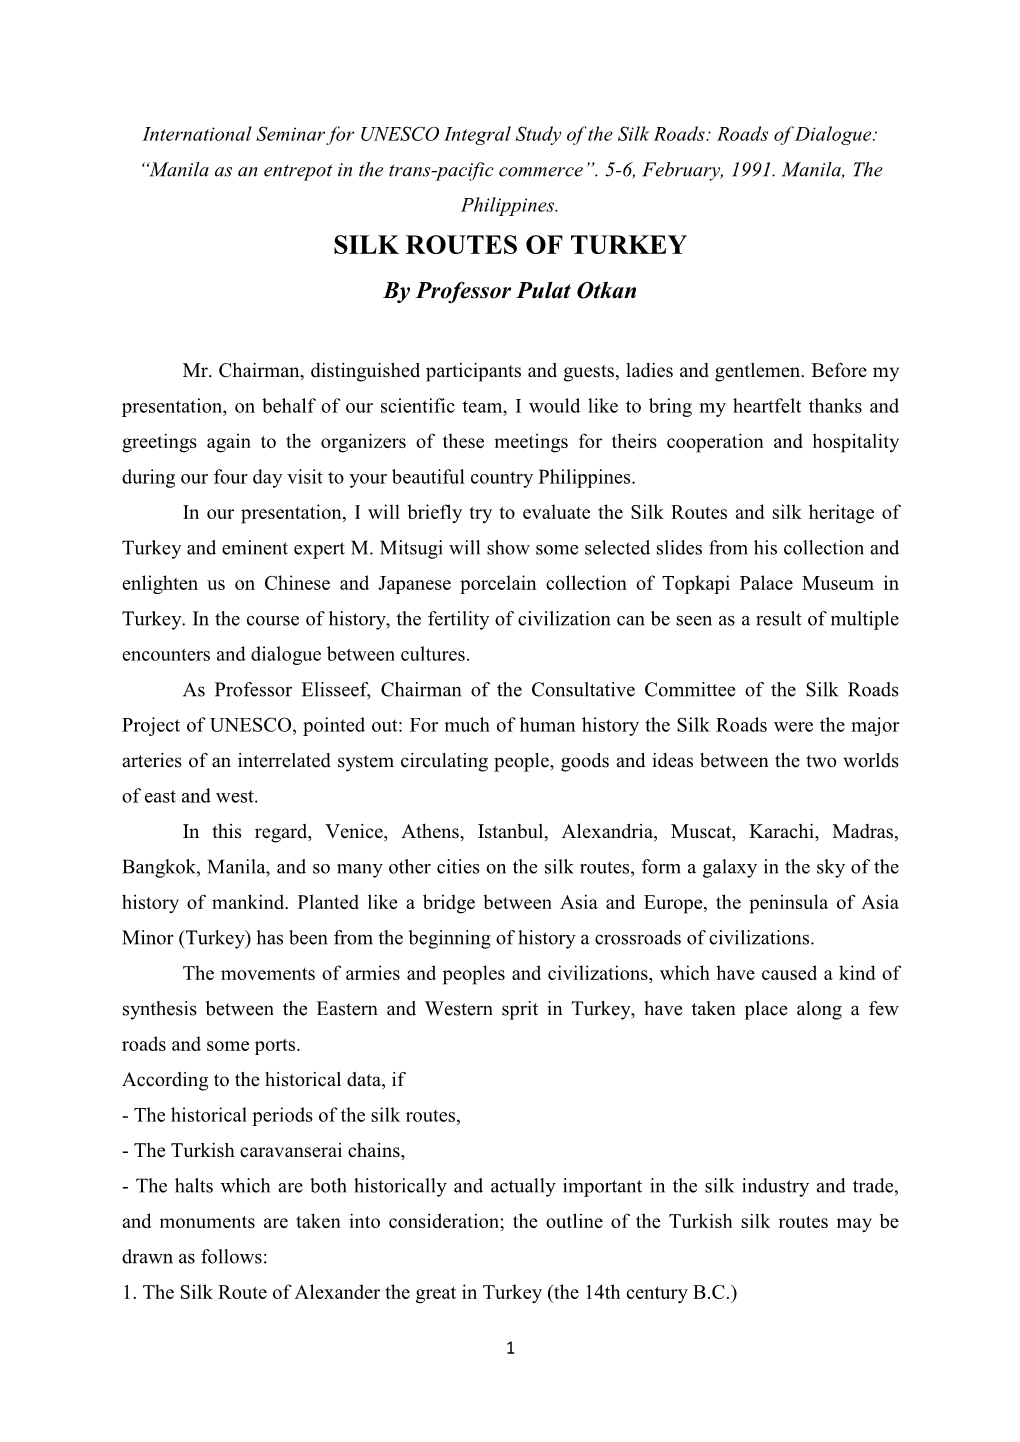 SILK ROUTES of TURKEY by Professor Pulat Otkan